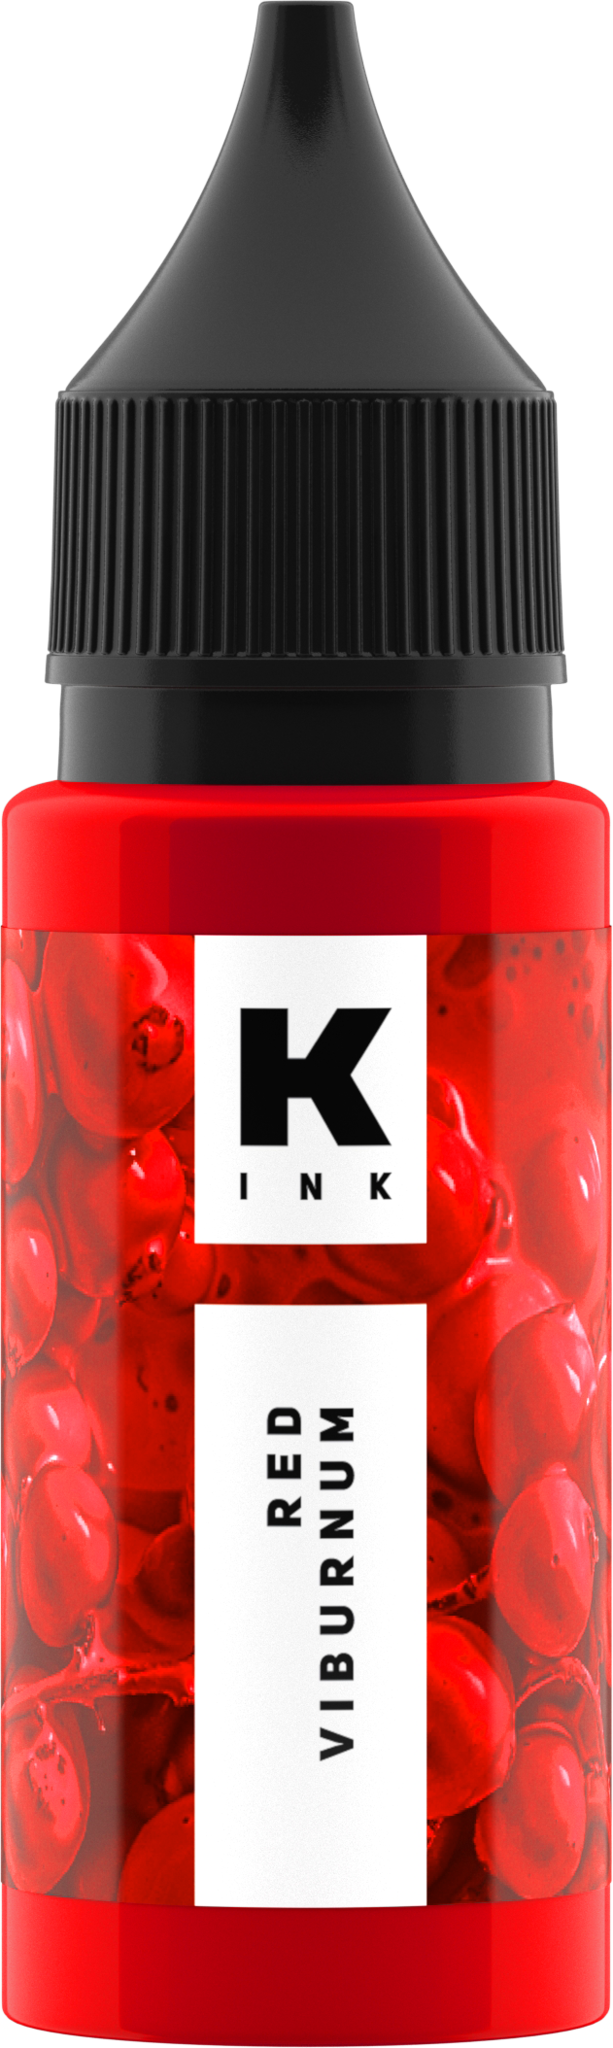 Краска Tattoo Ink для тату Красная калина (Red Viburnum)